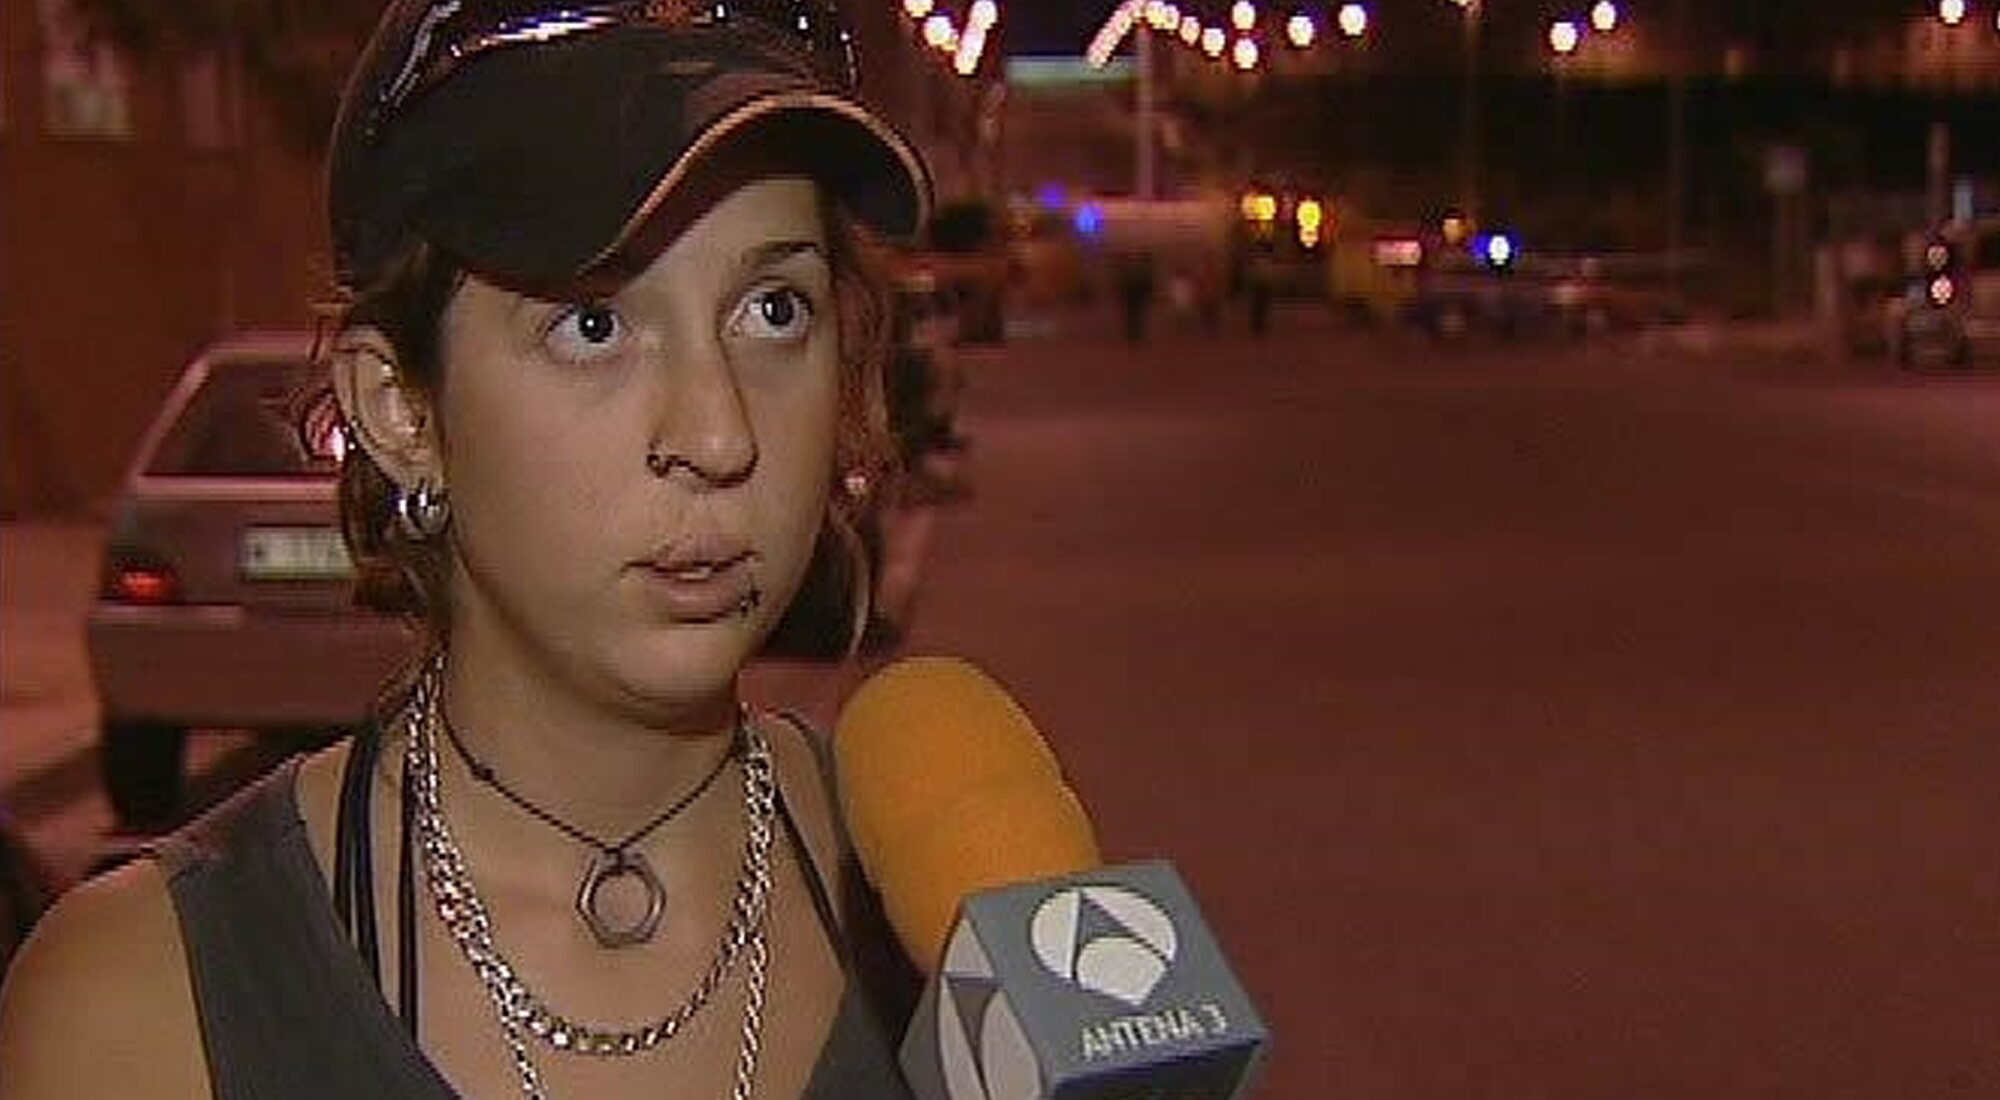 La socorrista de "la he liado parda" en 'Antena 3 noticias'